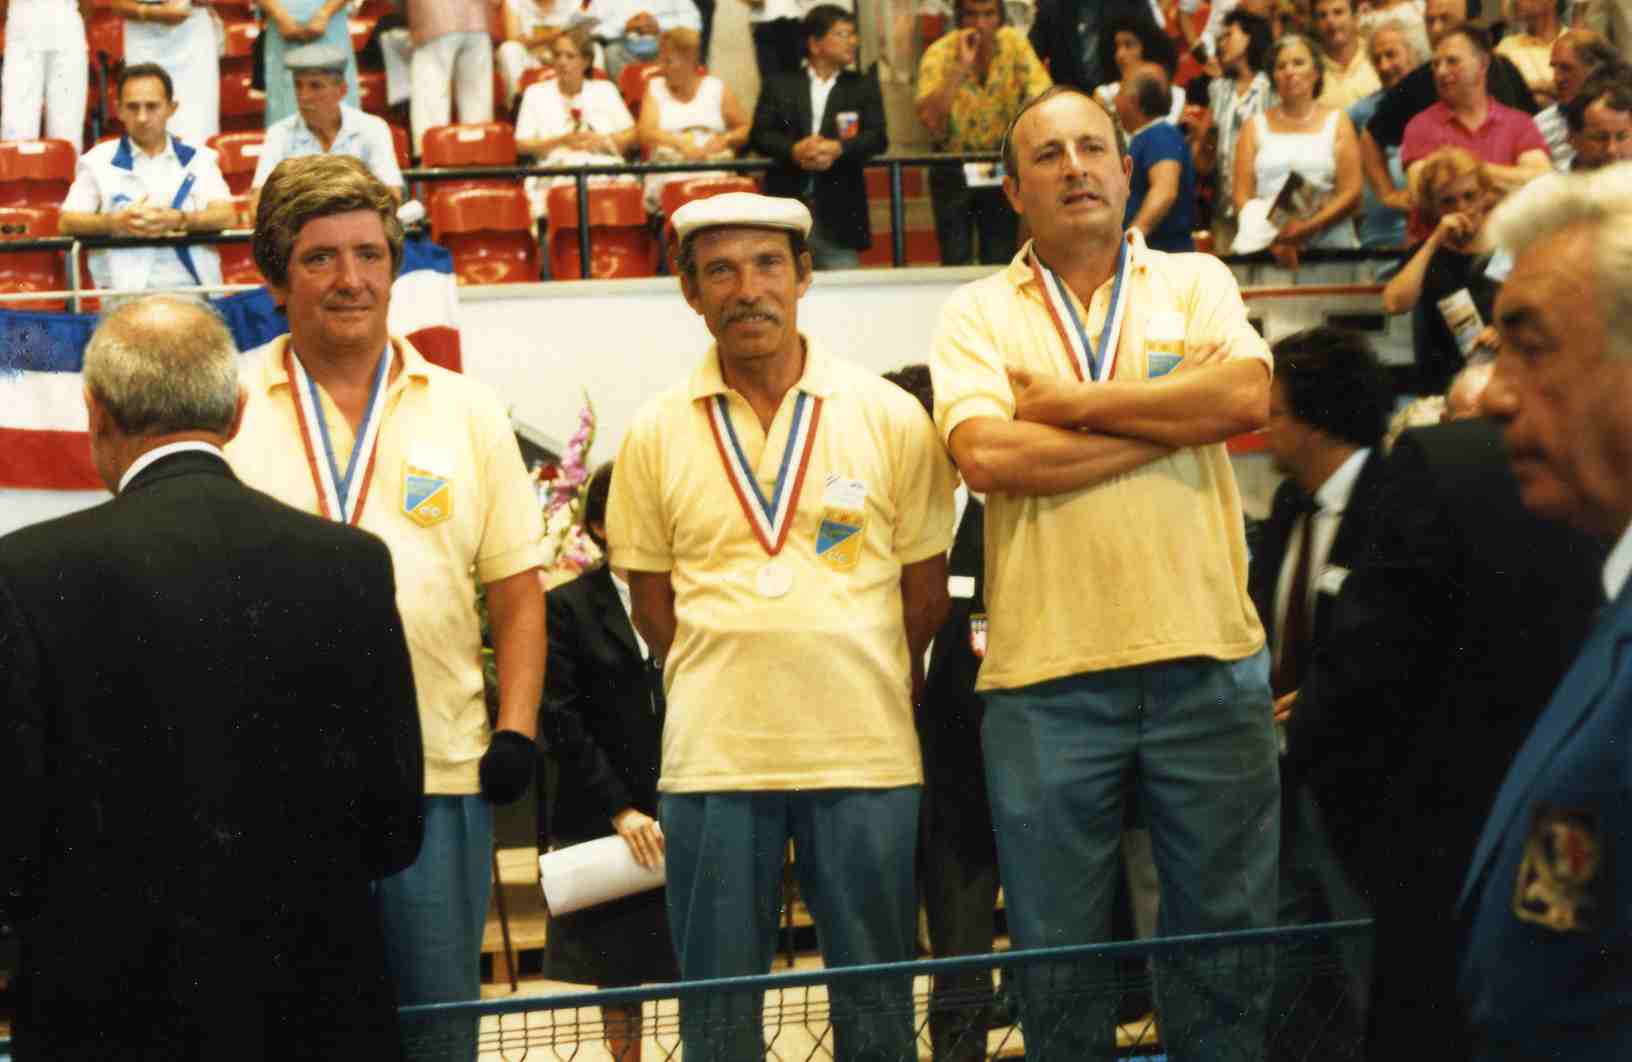 Le podium du championnat de France 1987